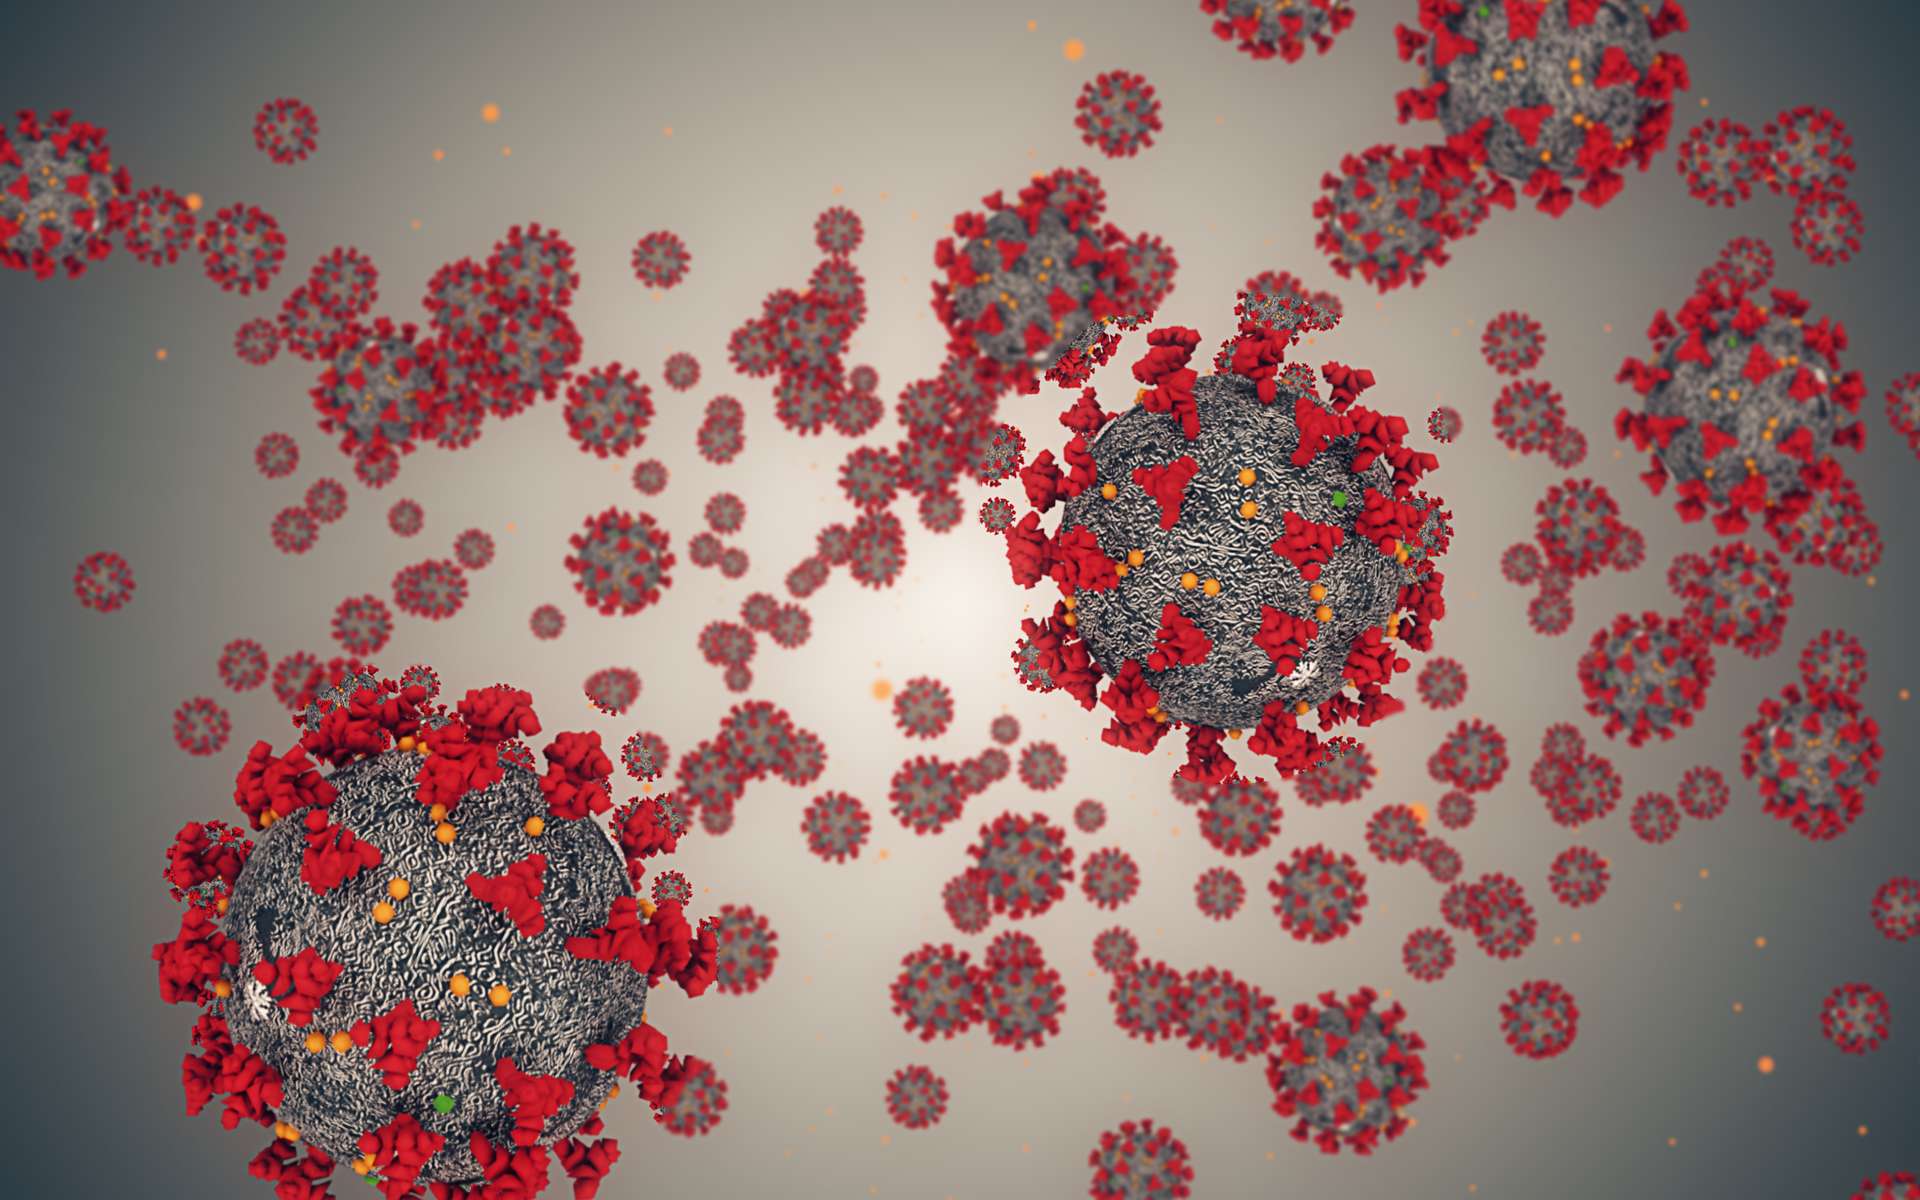 le coronavirus y’a t’il une chance qu’il perde de sa virulence ?